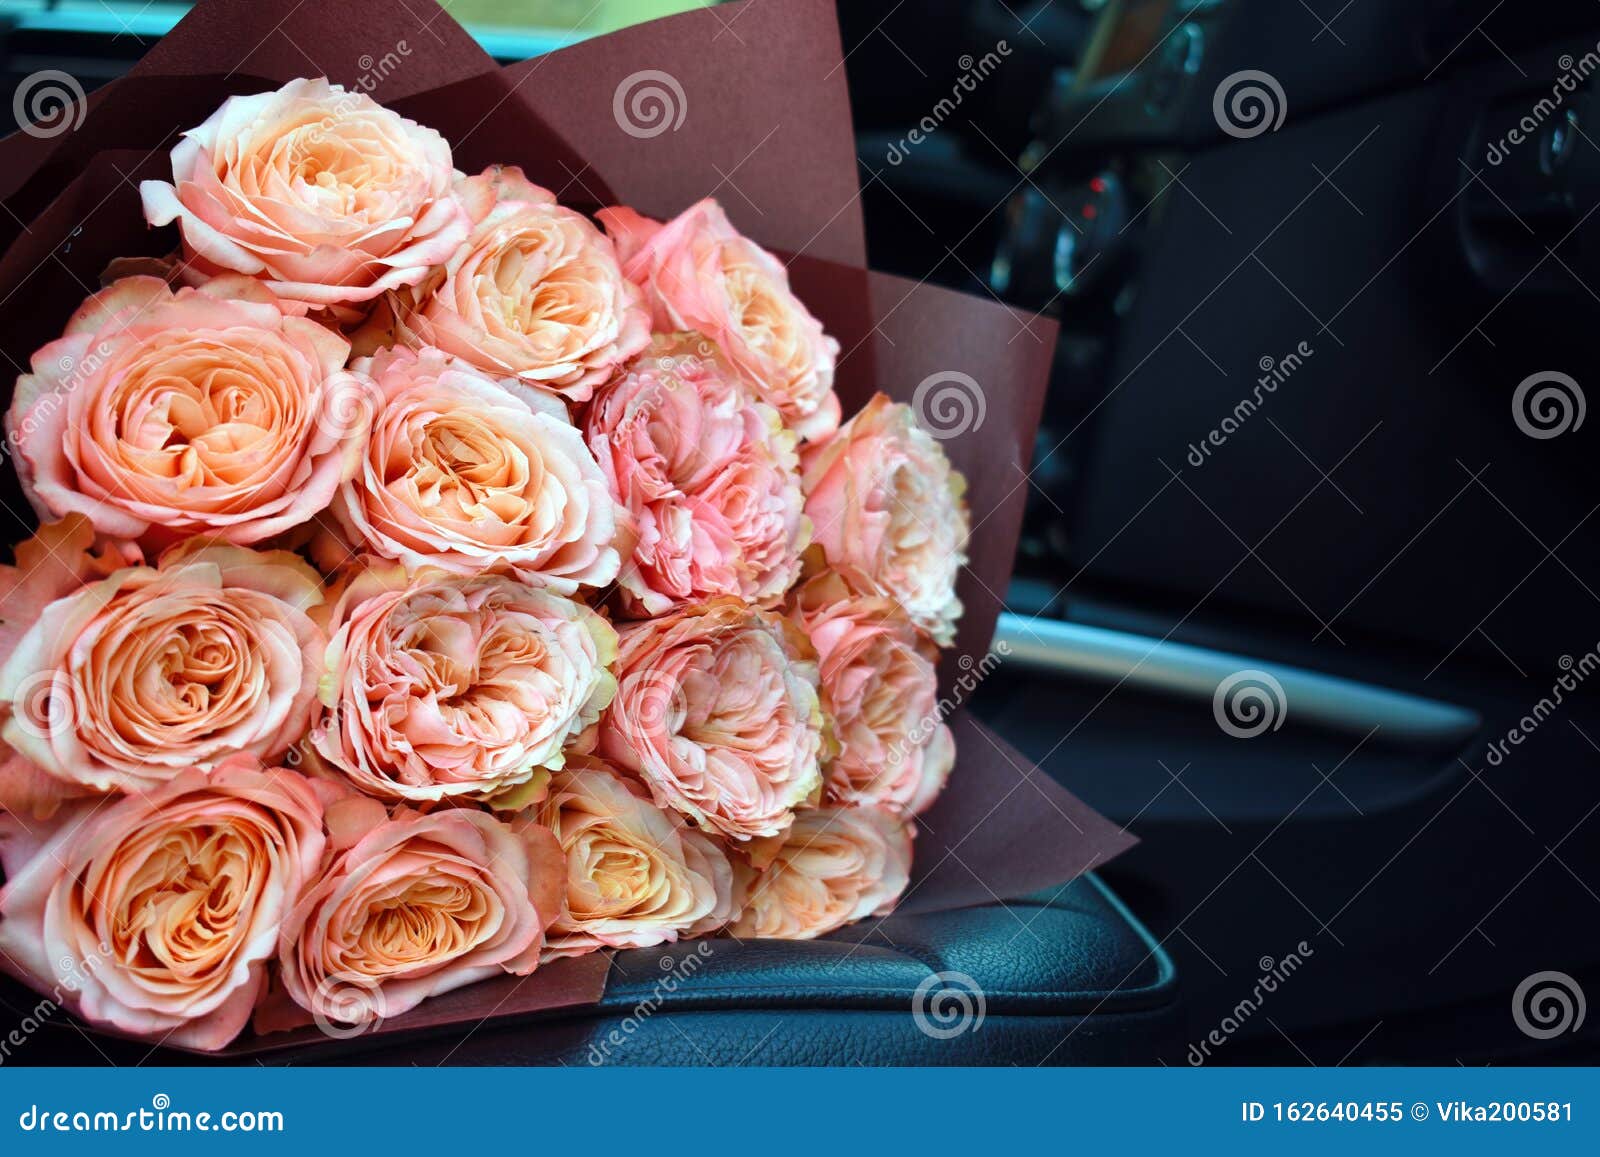 Букет Цветов Фото Красивые В Машине